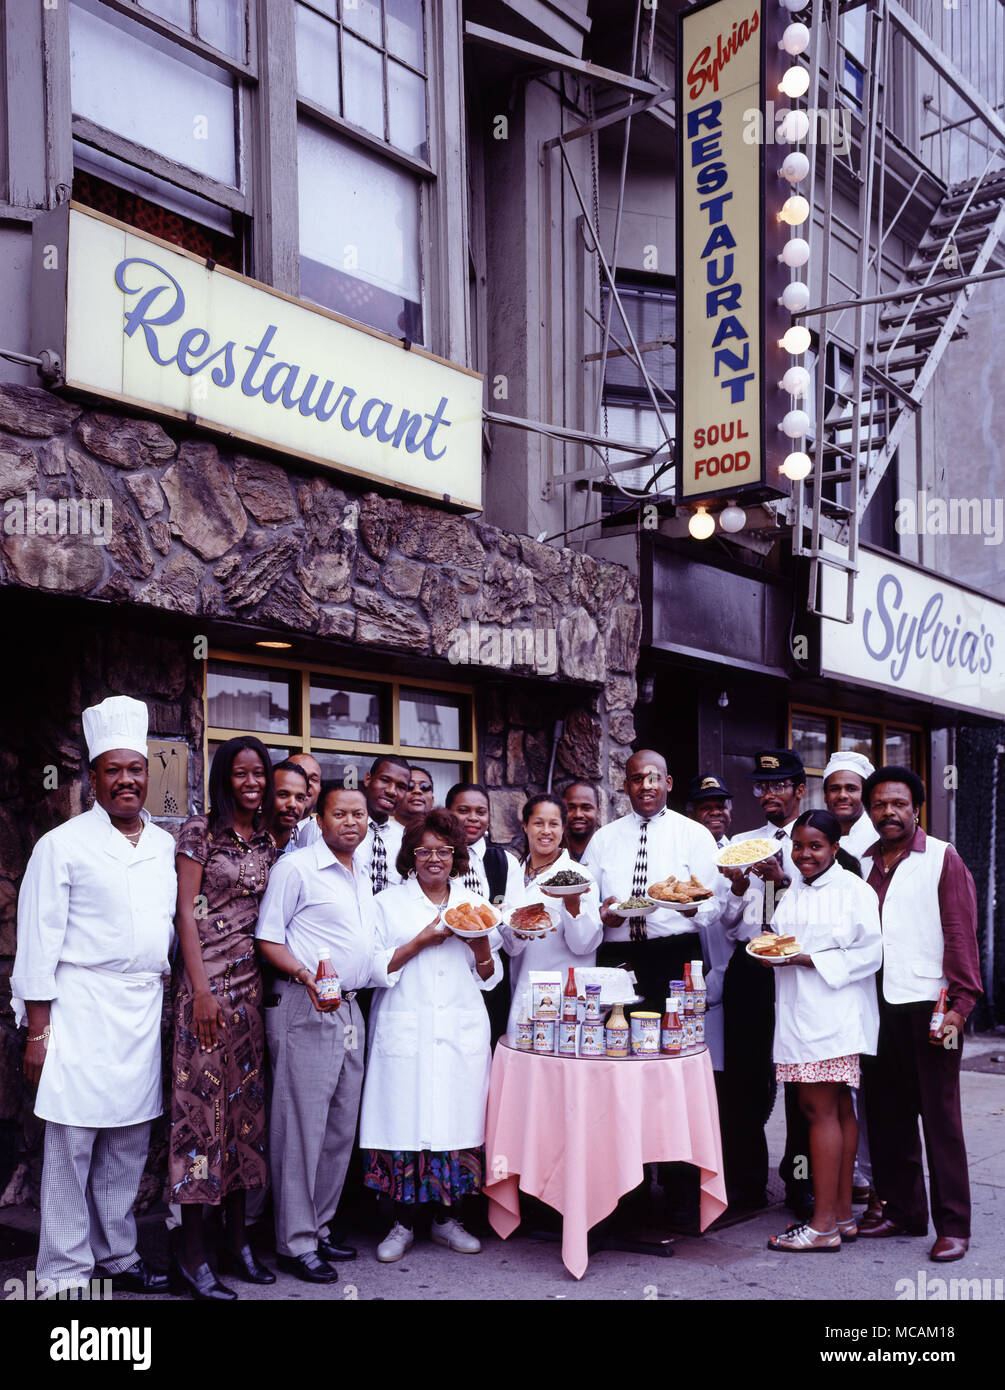 Harlem détaillant vendant Soul Food Banque D'Images